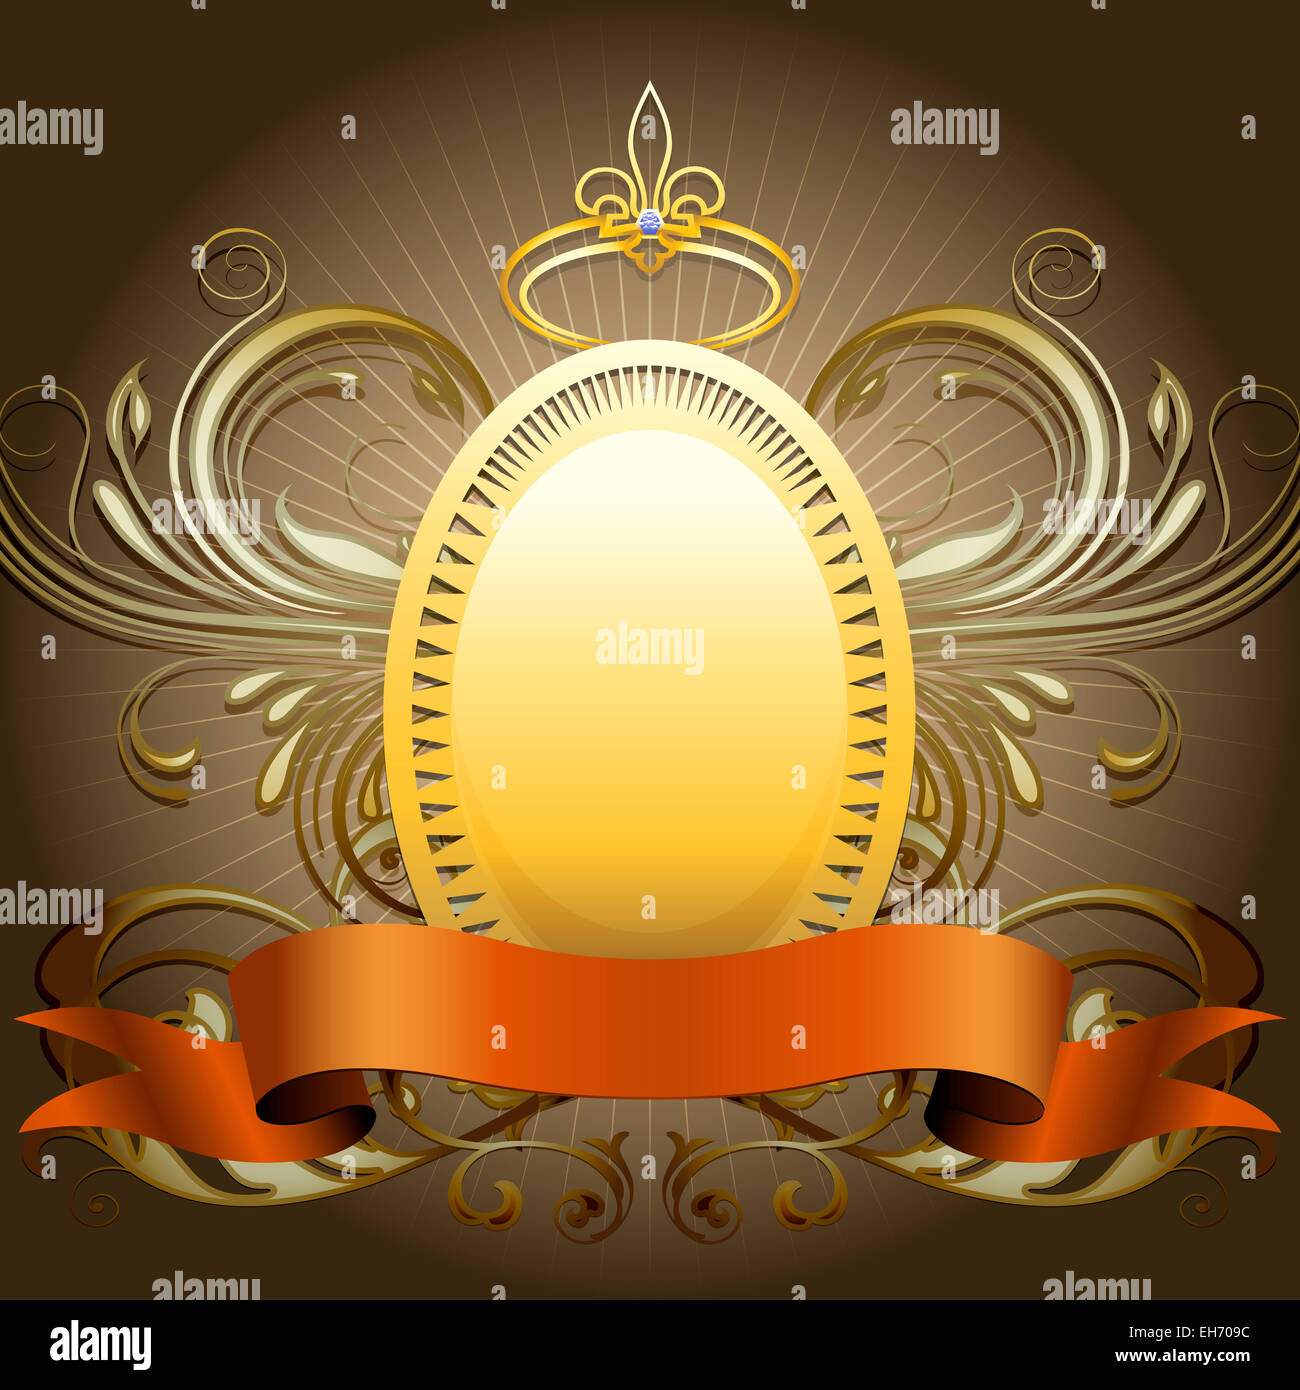 Le bouclier d'or avec couronne et ruban sur un fond sombre dessiné dans un style classique Banque D'Images